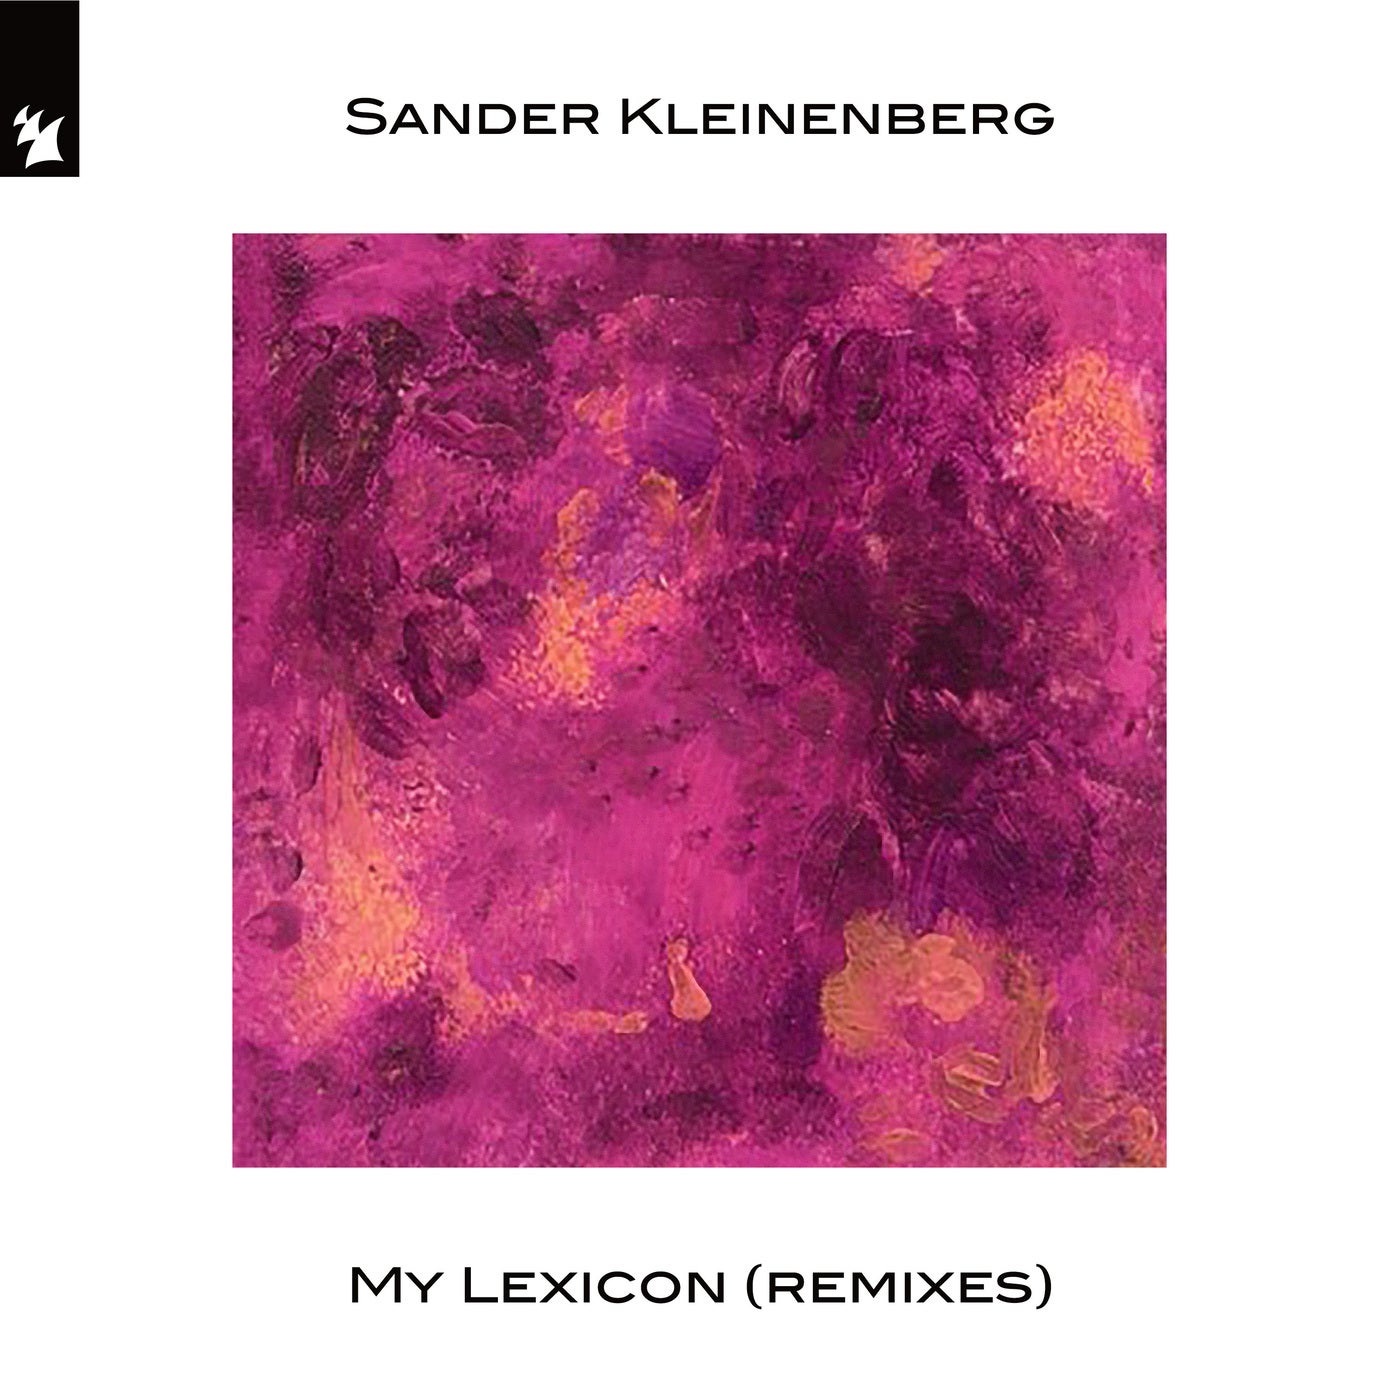 My Lexicon - Remixes